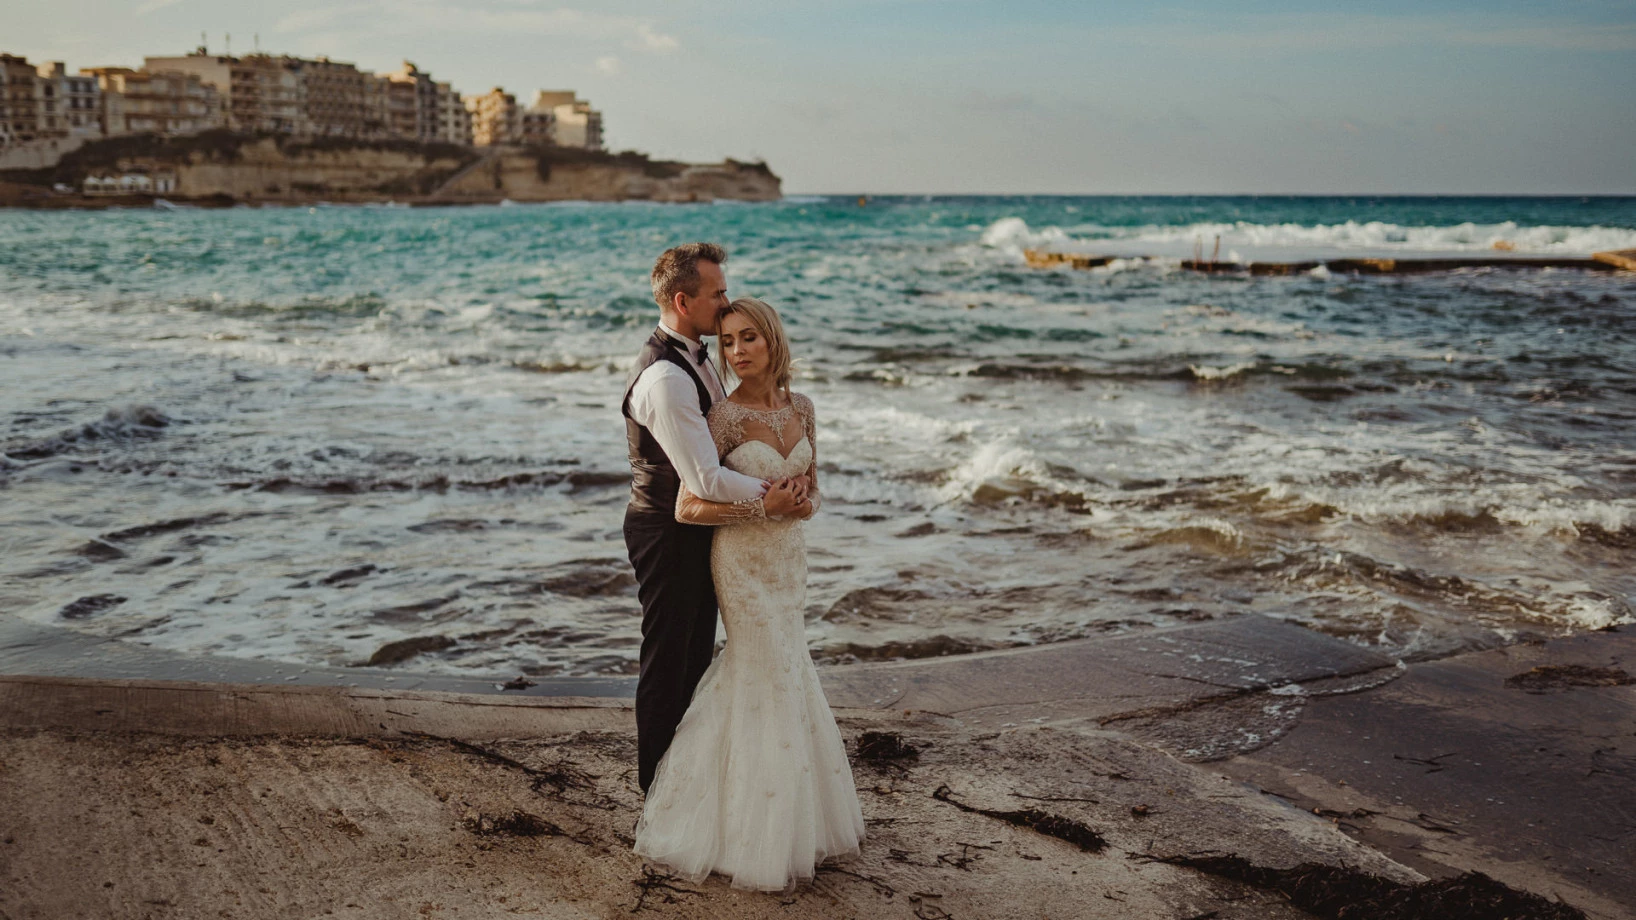 zdjęcia bialystok fotograf kacper-bialoblocki portfolio zdjecia slubne inspiracje wesele plener slubny